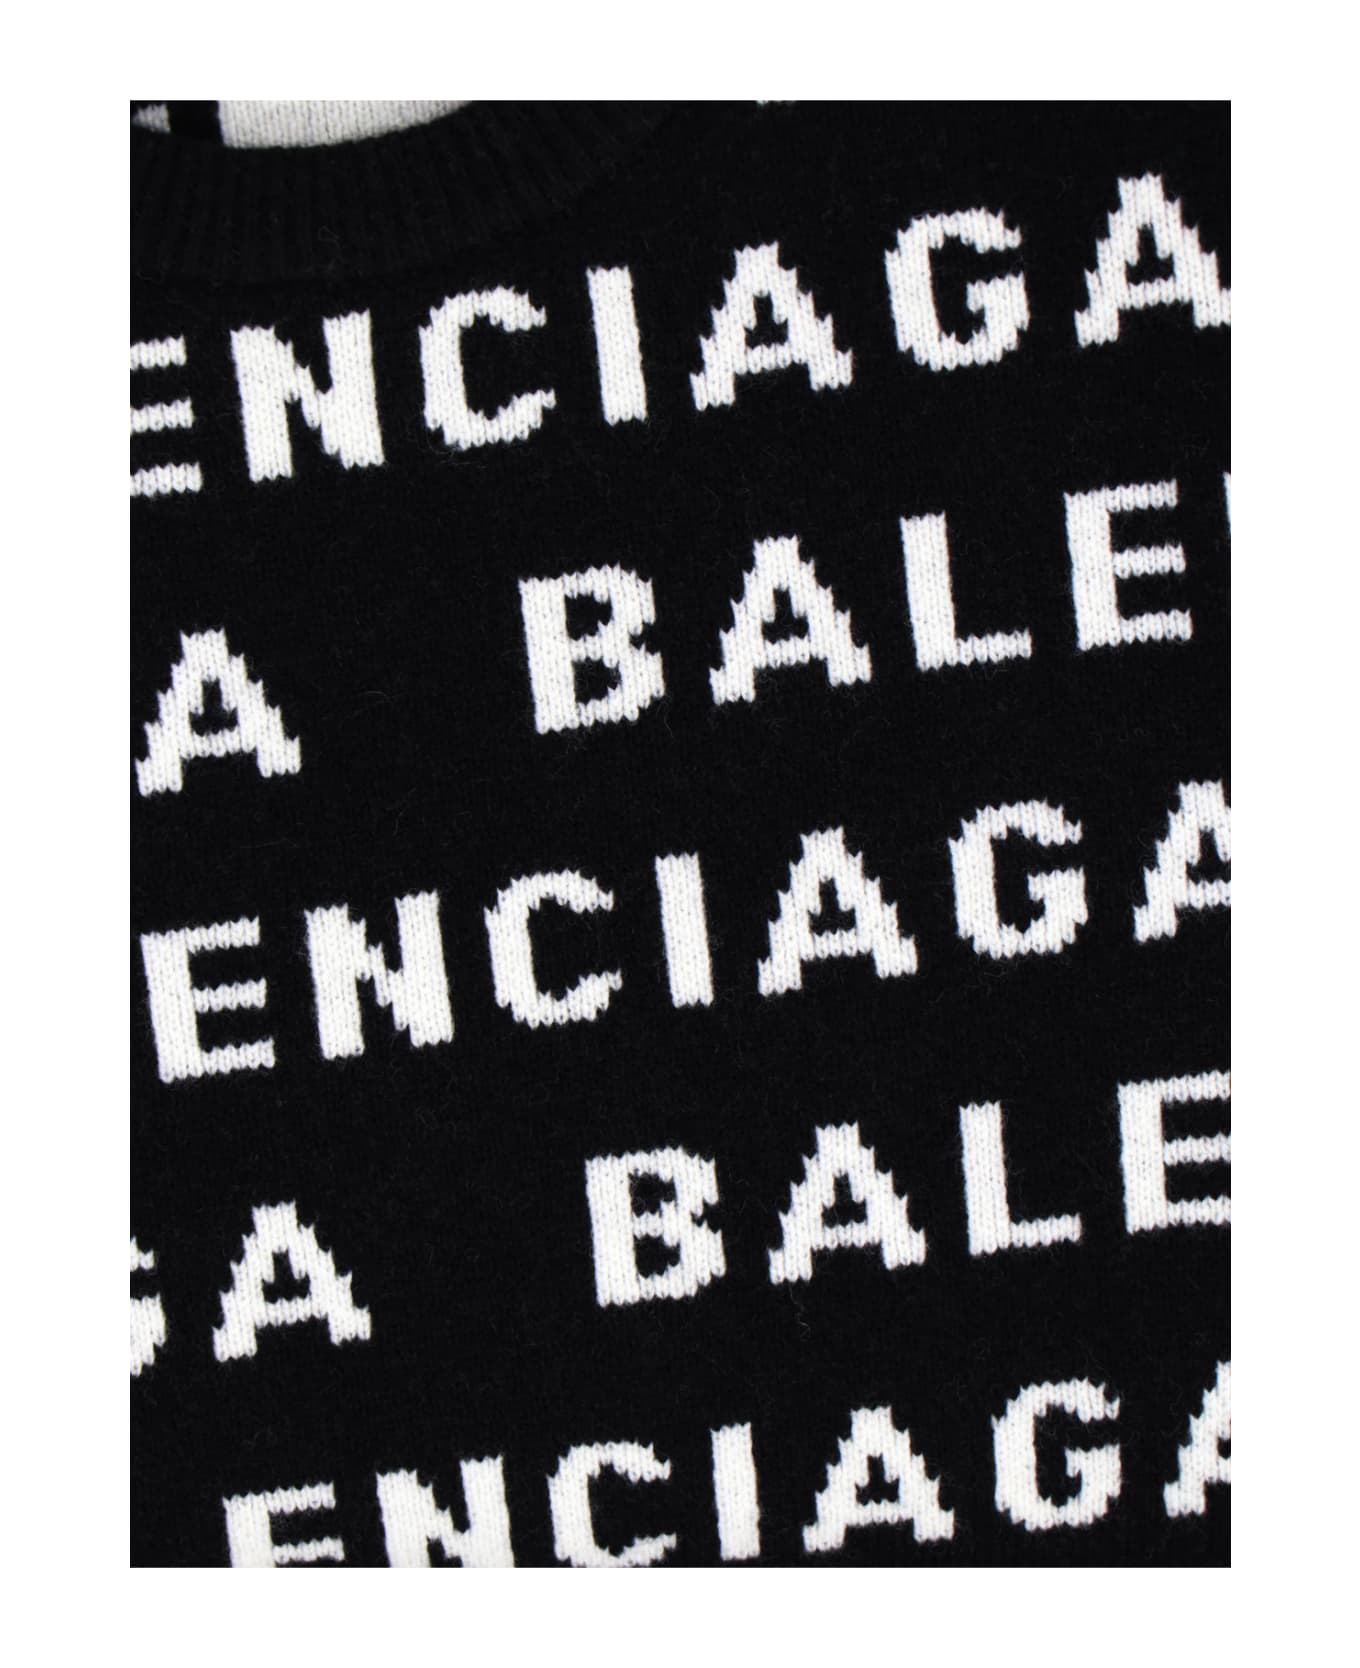 Balenciaga All-over Logo Sweater - Black  